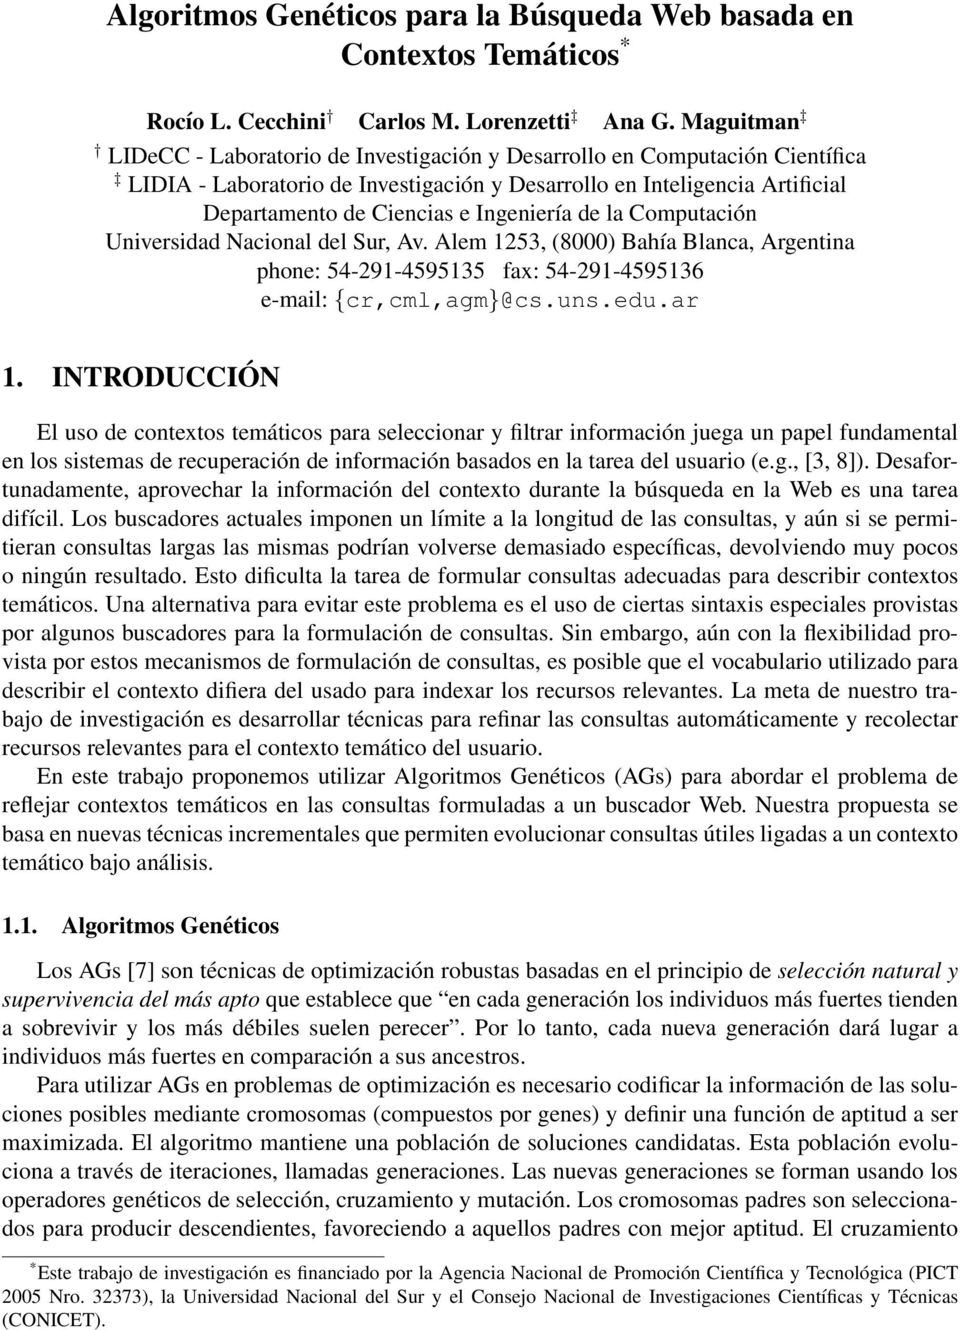 Ingeniería de la Computación Universidad Nacional del Sur, Av. Alem 1253, (8000) Bahía Blanca, Argentina phone: 54-291-4595135 fax: 54-291-4595136 e-mail: {cr,cml,agm}@cs.uns.edu.ar 1.